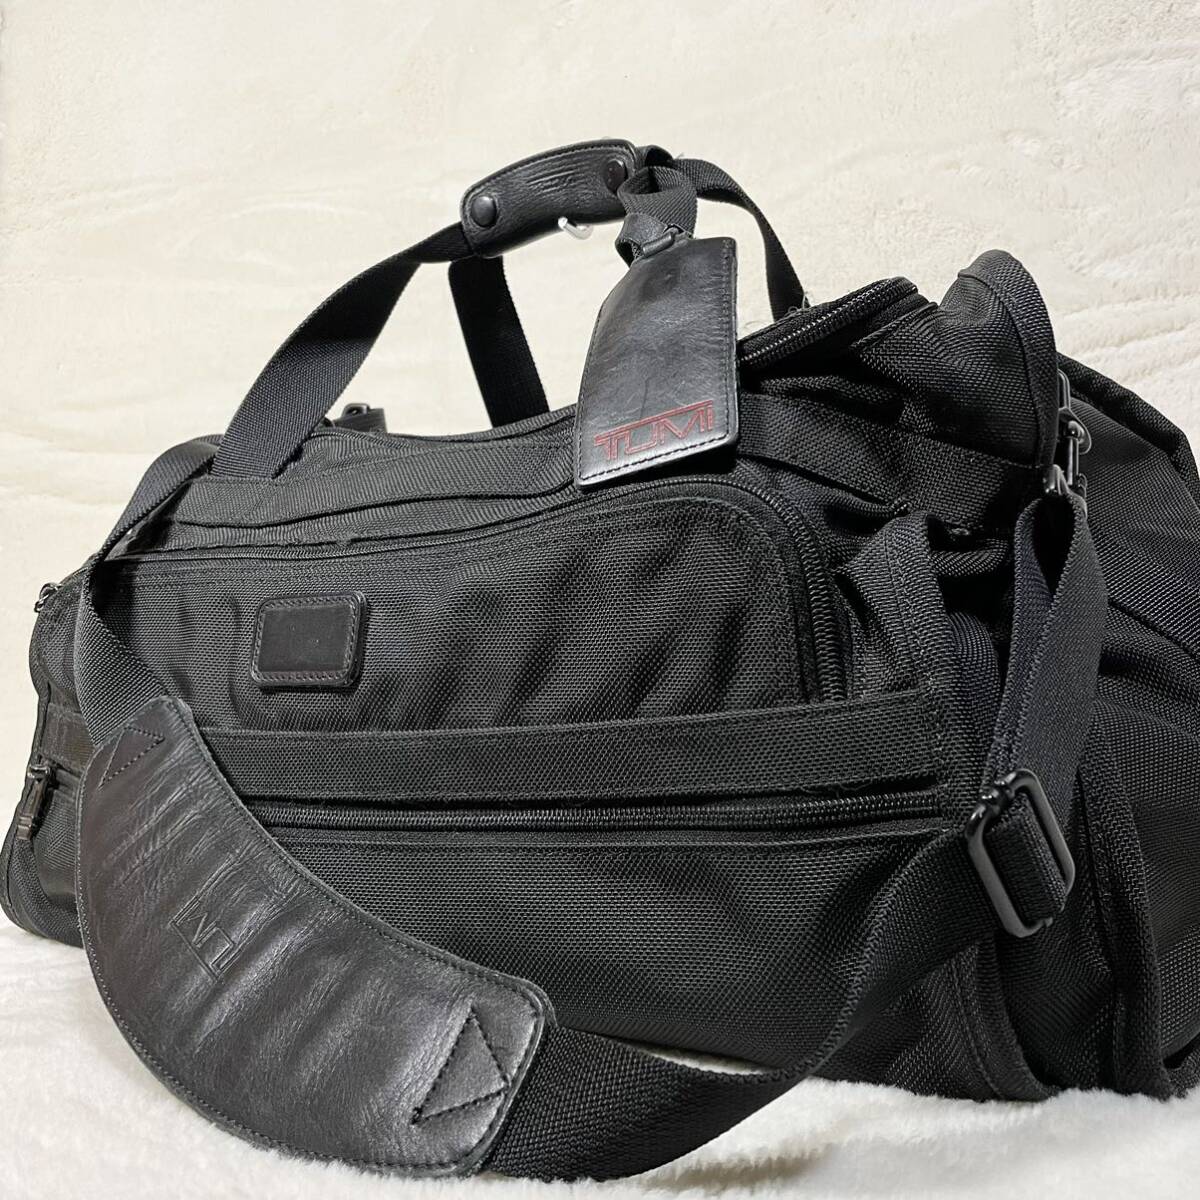 【大容量】 TUMI トゥミ ボストンバッグ 2way ビジネスバッグ ショルダー 263d3 ブラック 黒 メンズ 旅行カバン 鞄 の画像1